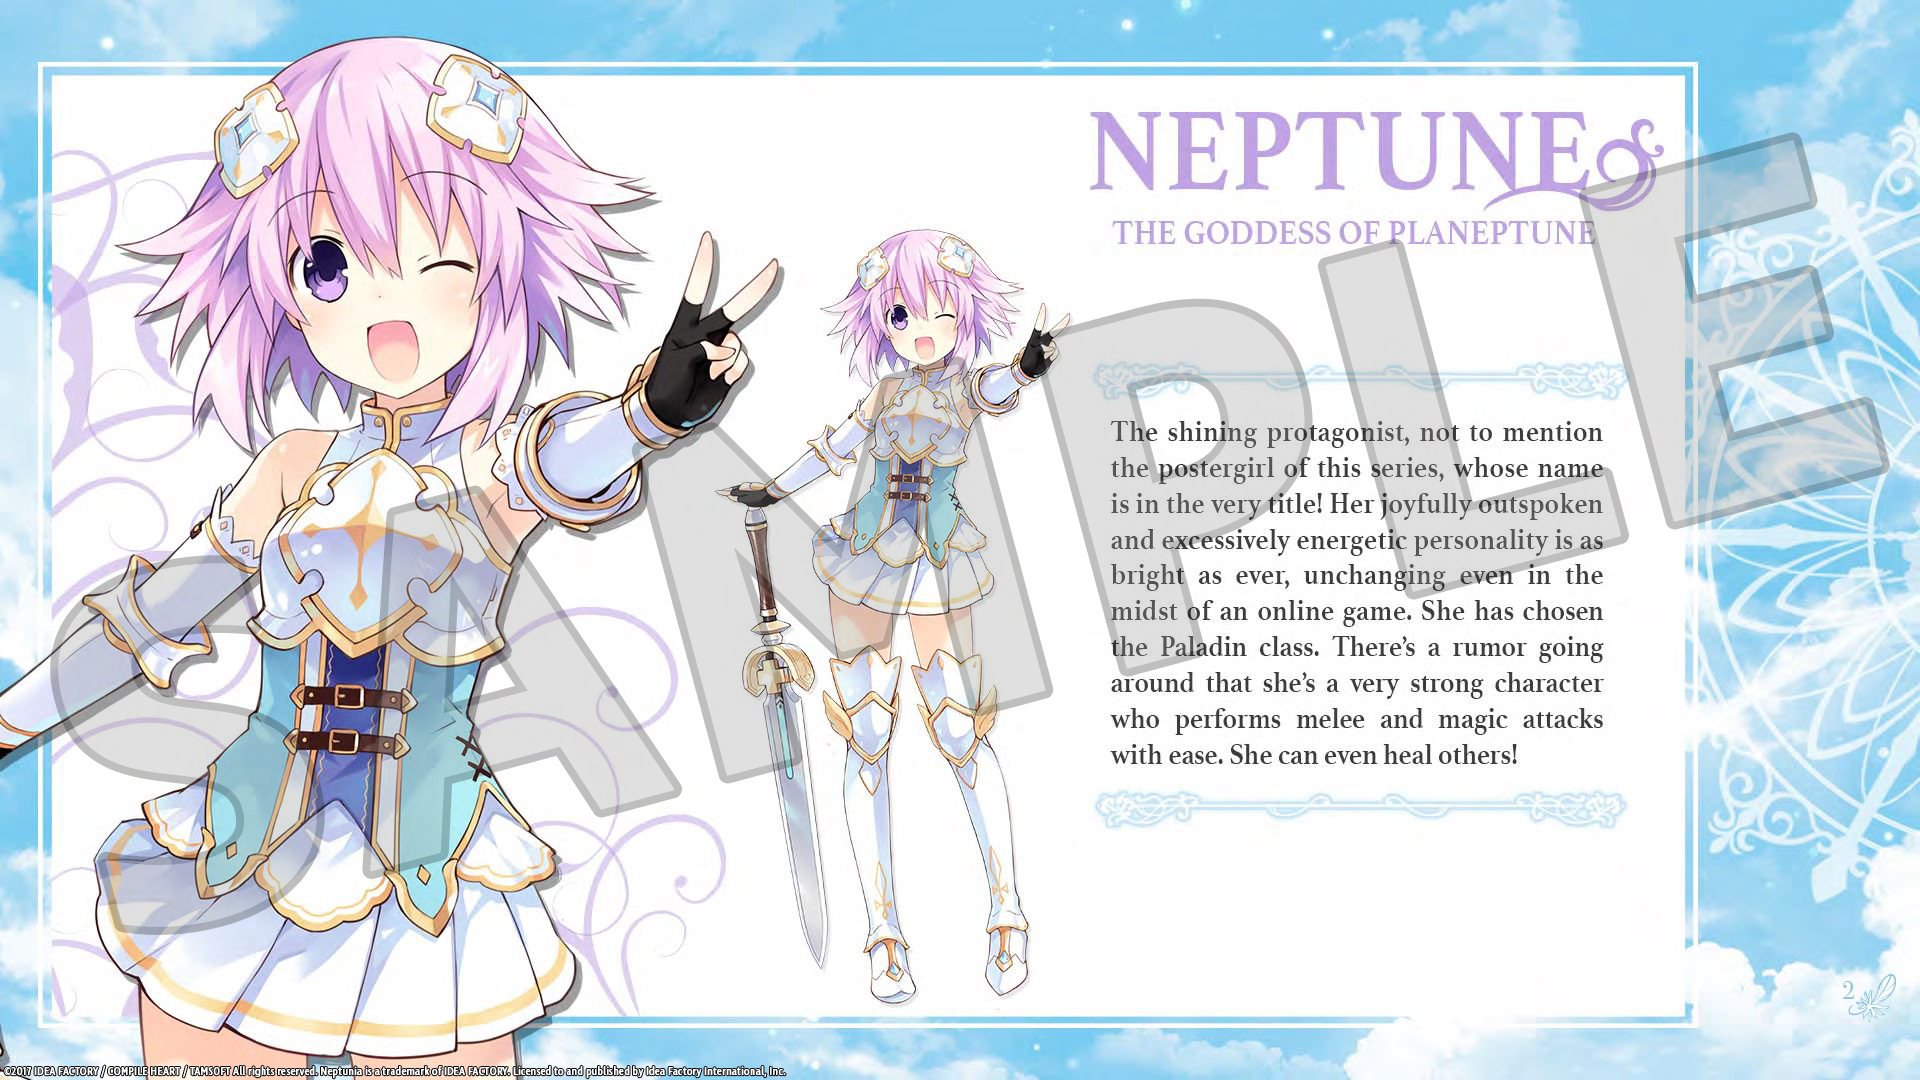 Cyberdimension Neptunia: 4 Goddesses Online - Deluxe Pack DLC Steam CD Key, $1.69